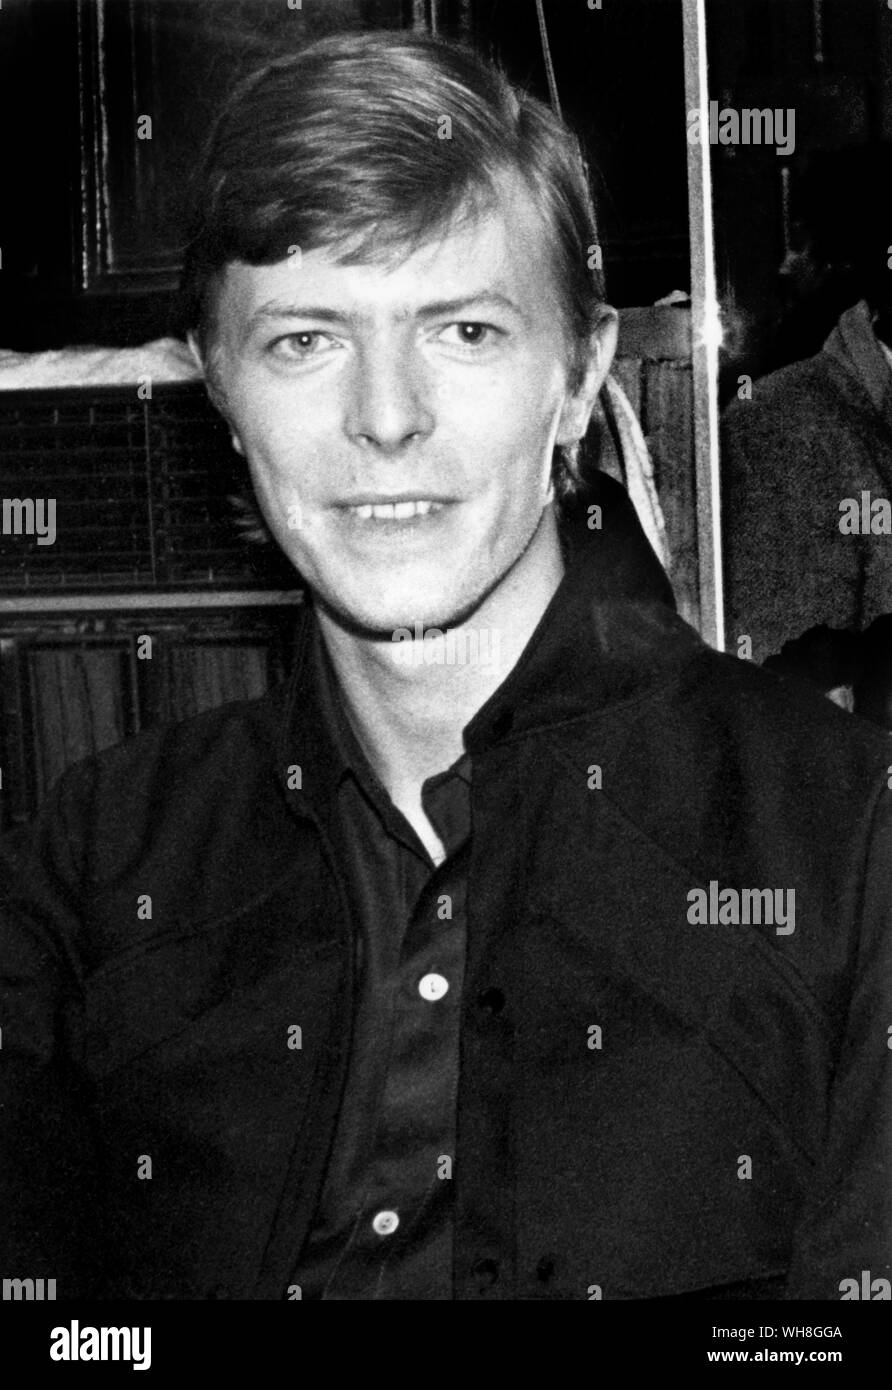 David Bowie dietro le quinte Paladium dopo un Roxy Music concerto in 1979 Foto Stock